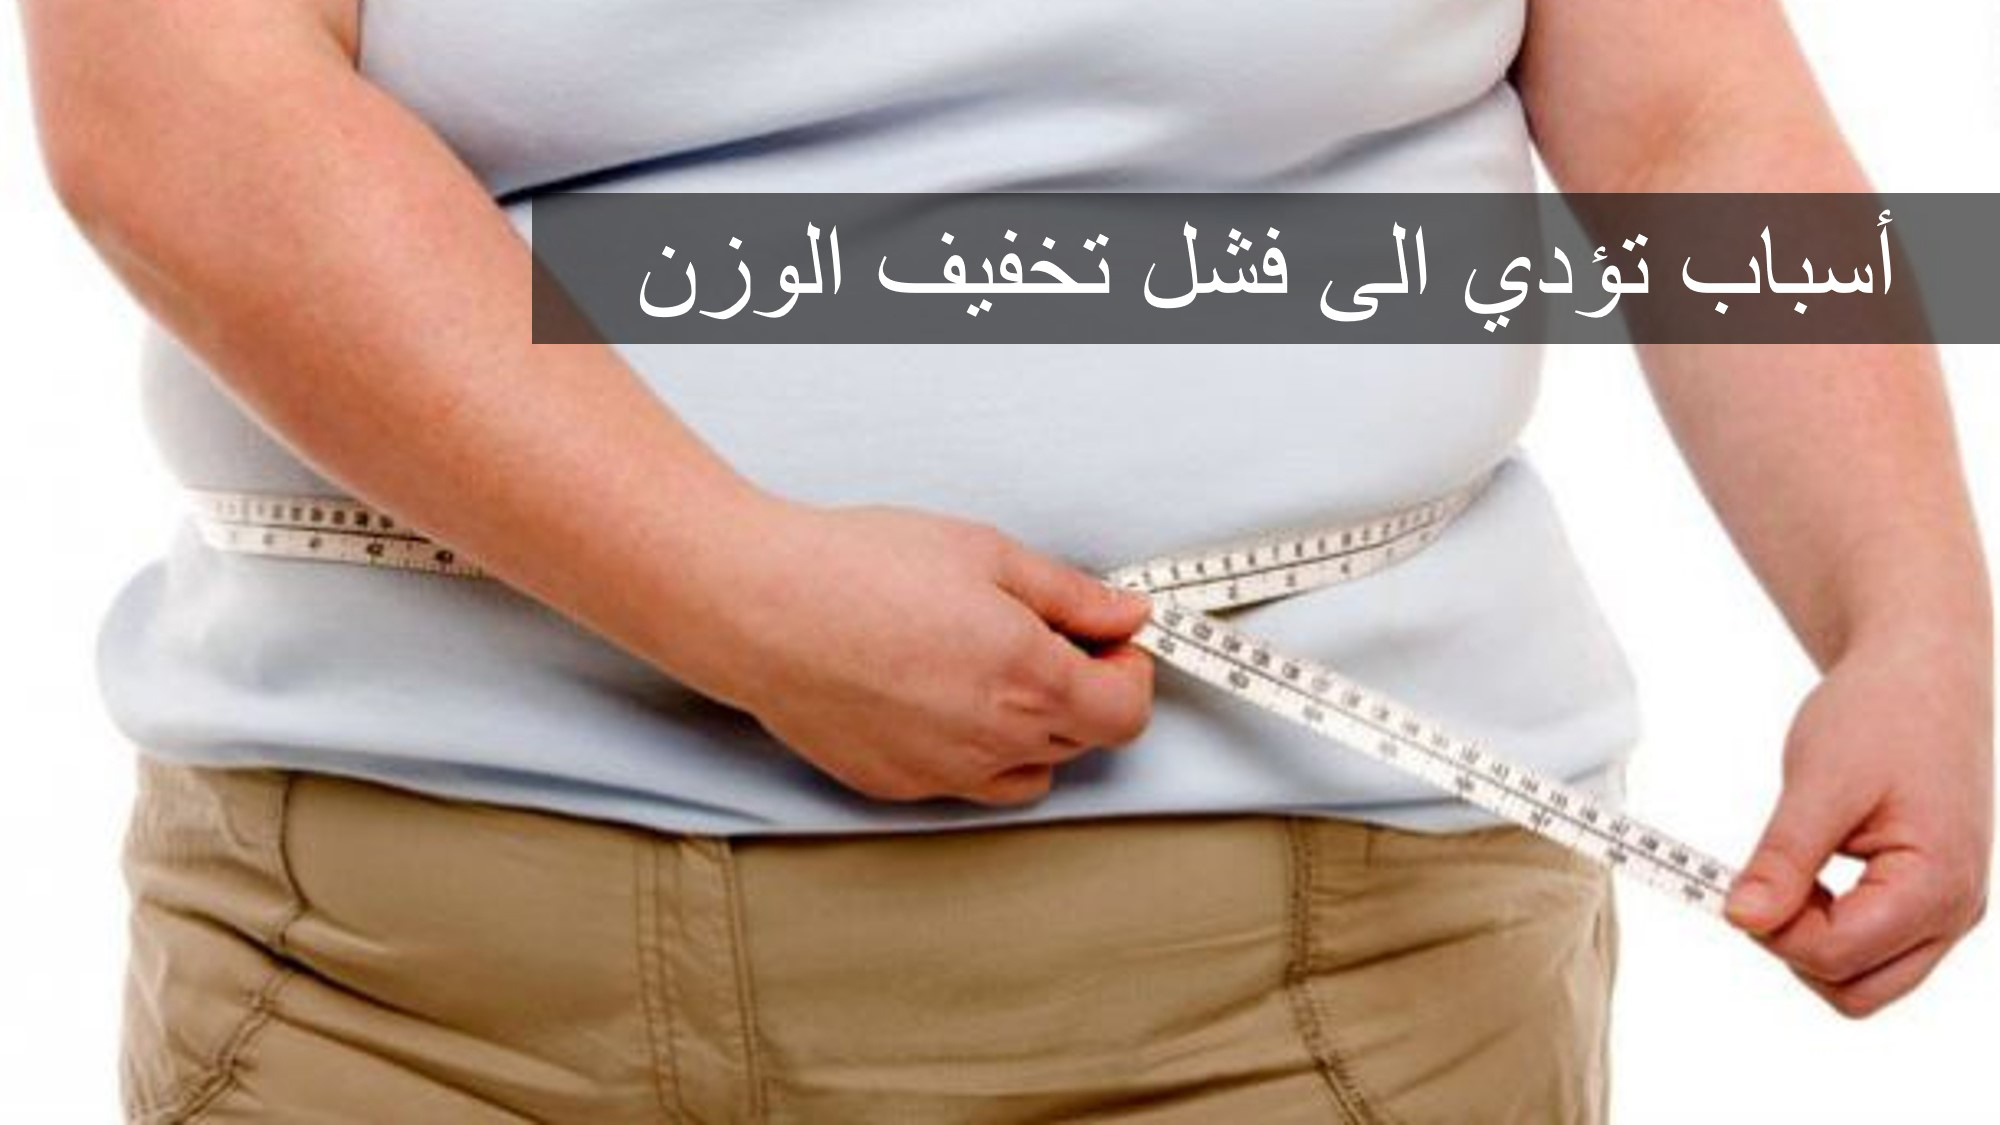 أسباب تؤدي إلى فشل تخفيف الوزن